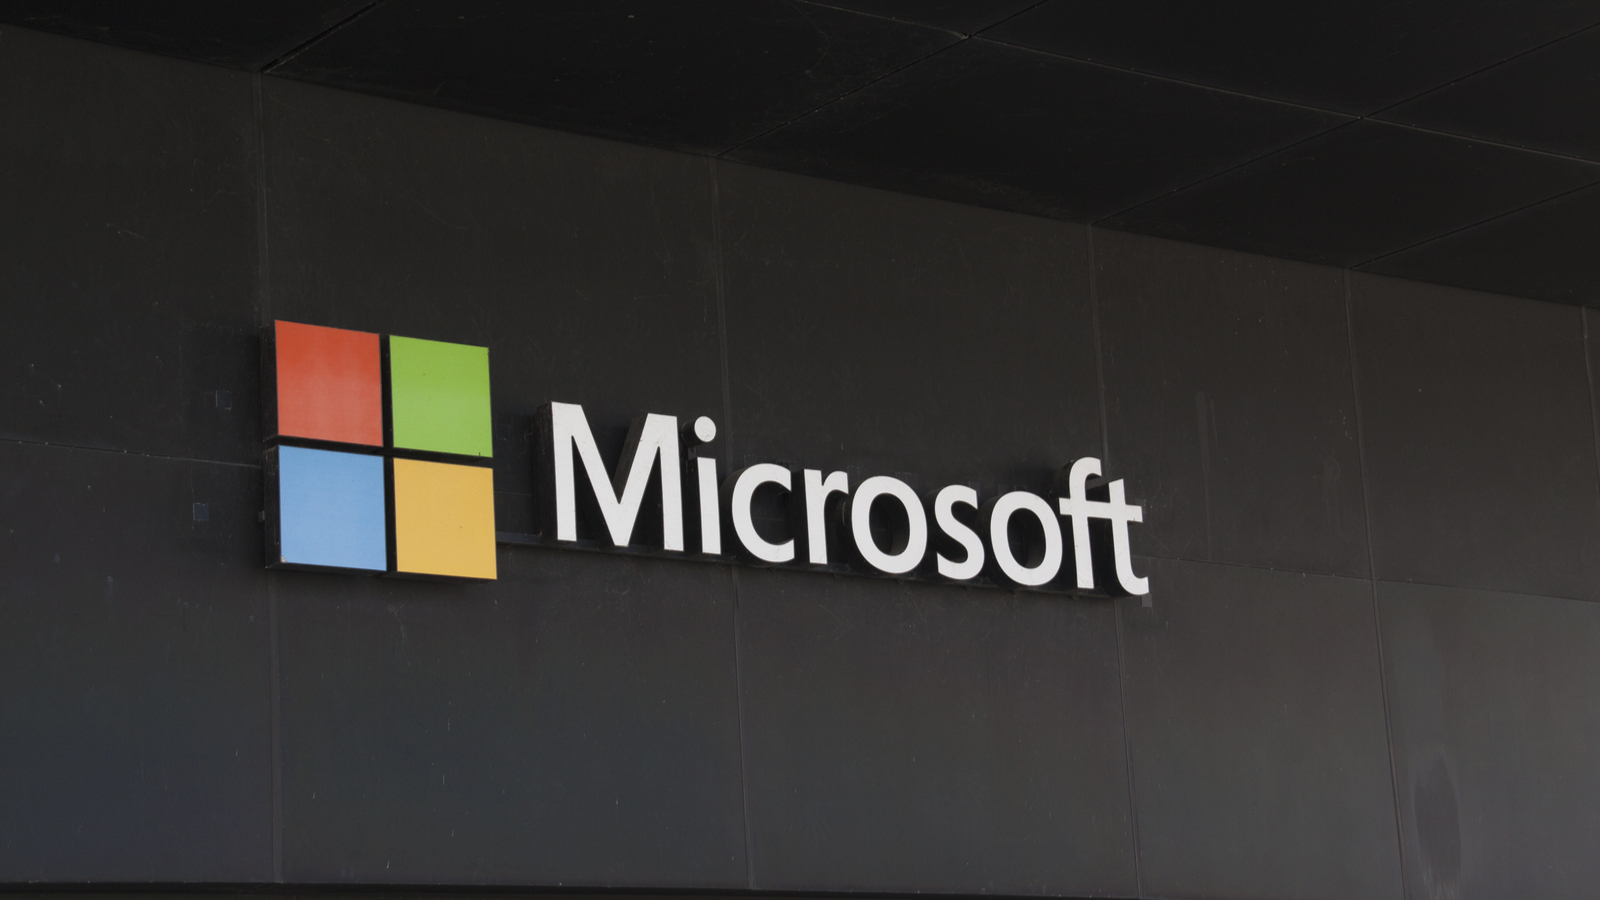 Pour son app store, Microsoft veut jouer la carte de l'ouverture face aux développeurs